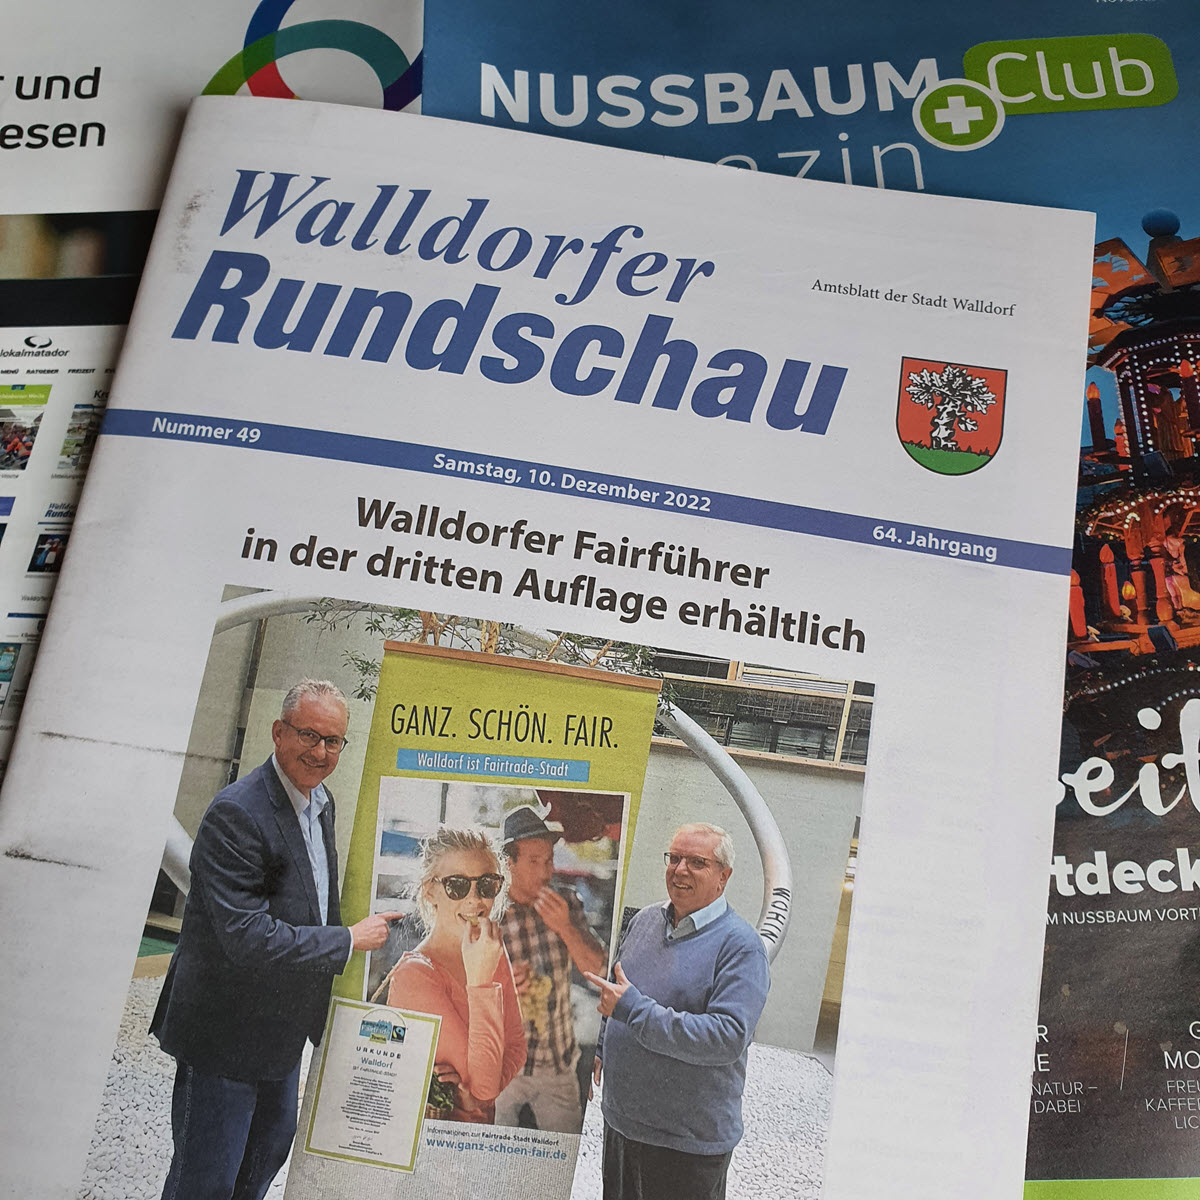 Die Walldorfer Rundschau 2022 Nr. 49 | Foto: Dr. Clemens Kriesel
